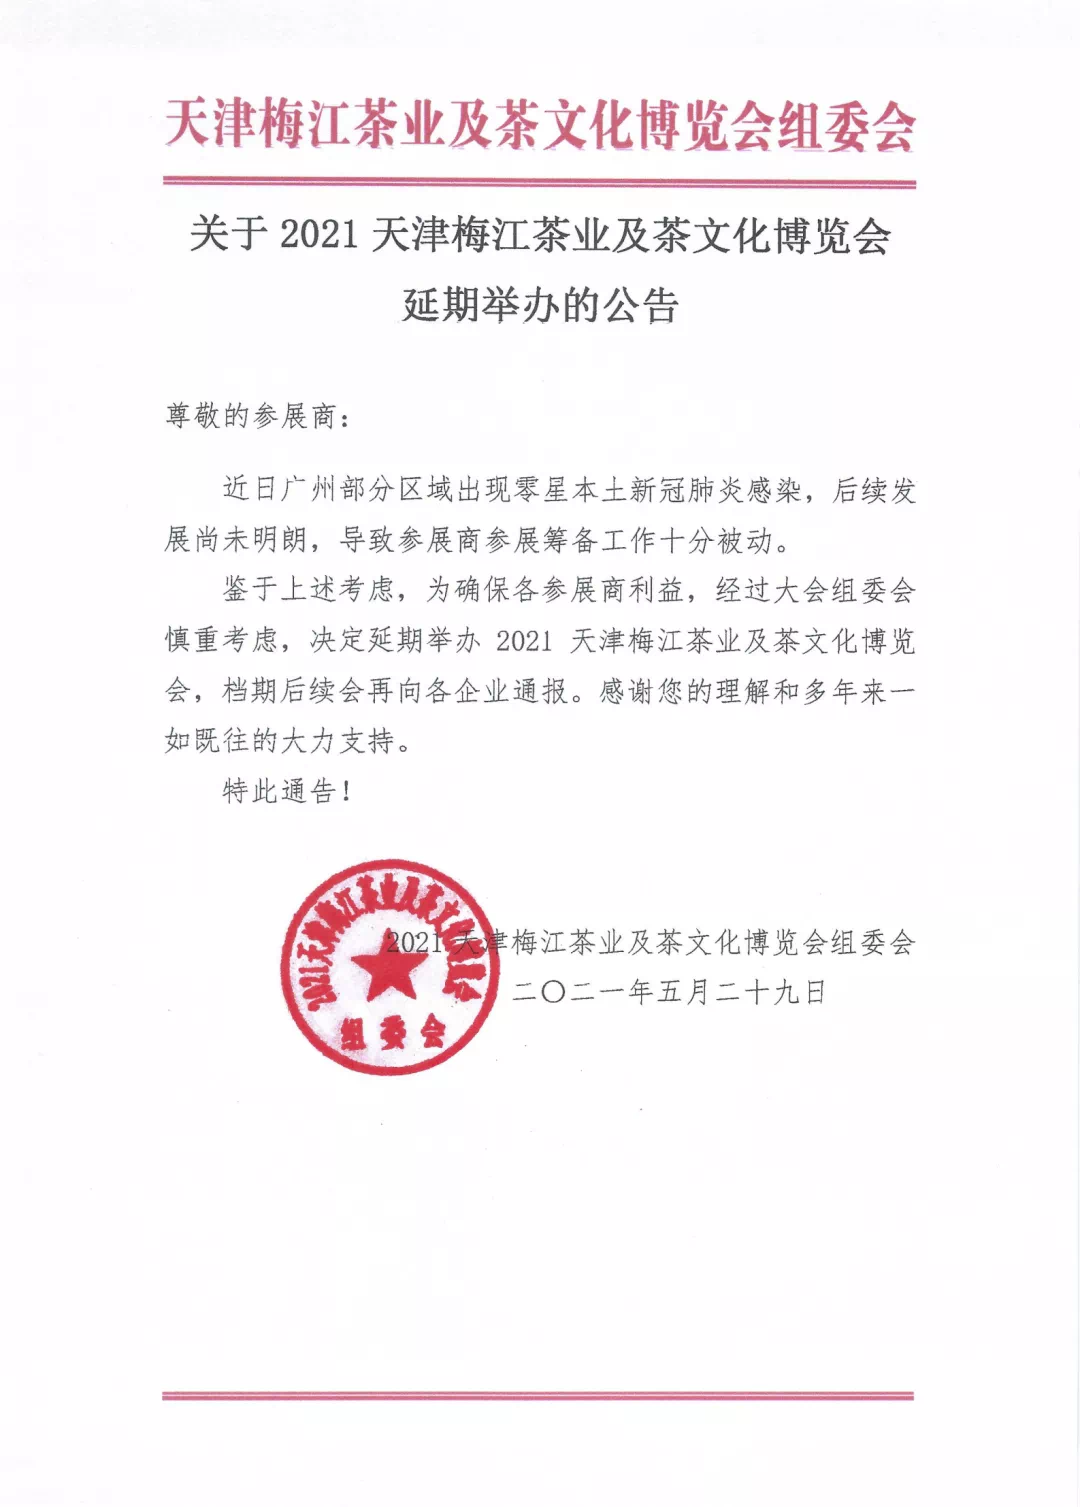 官宣 | 2021天津茶博会延期举办